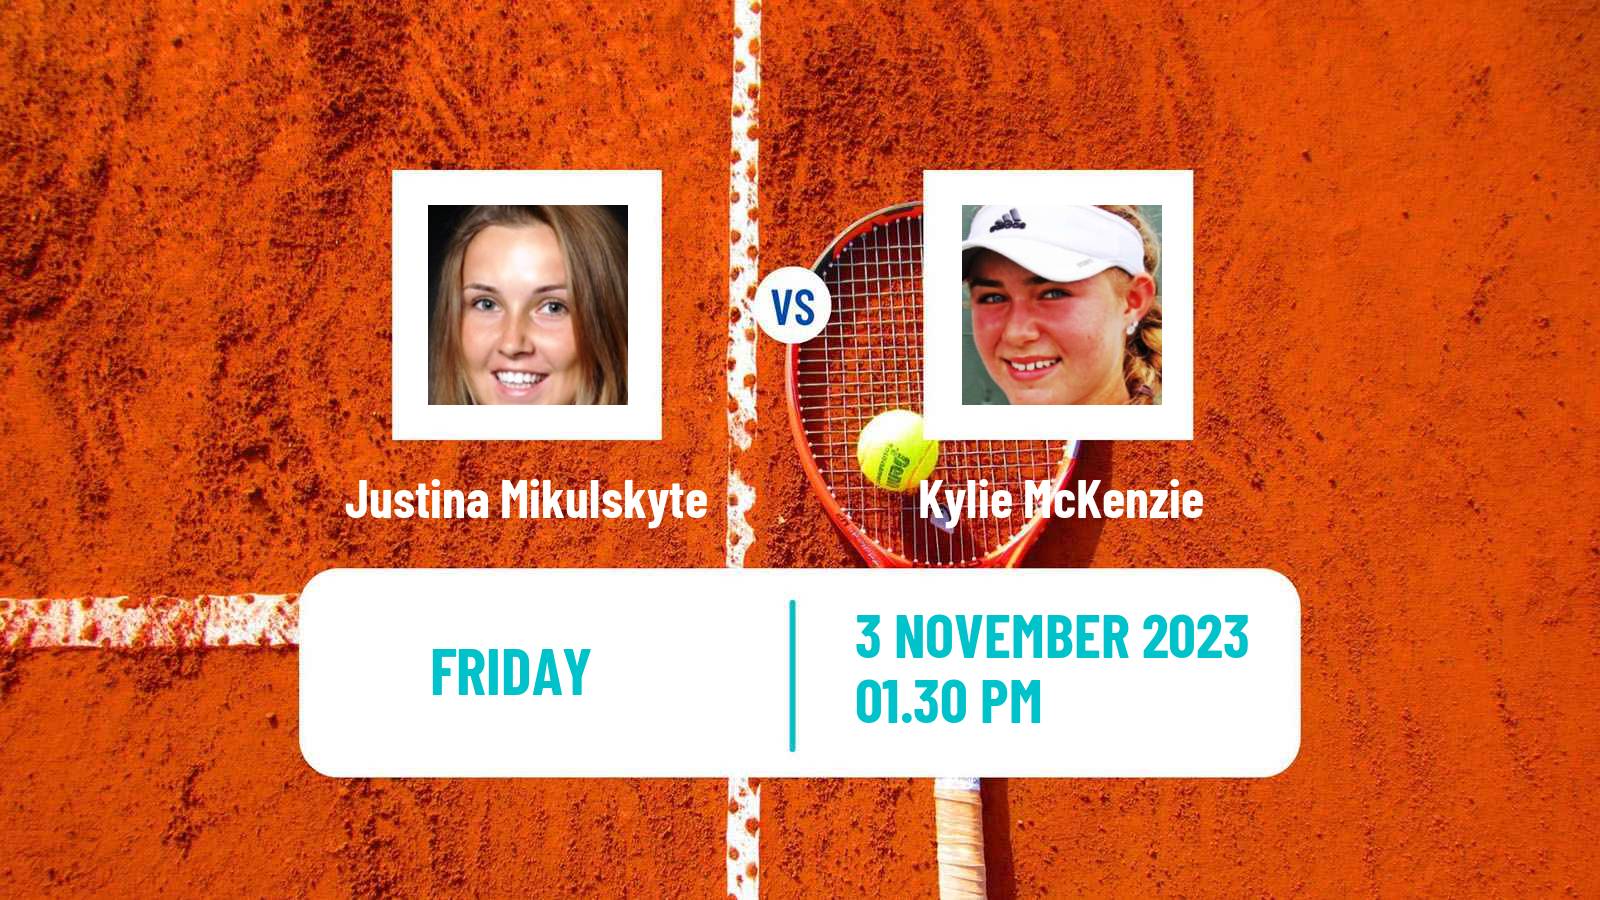 Tennis ITF W25 Edmonton Women Justina Mikulskyte - Kylie McKenzie